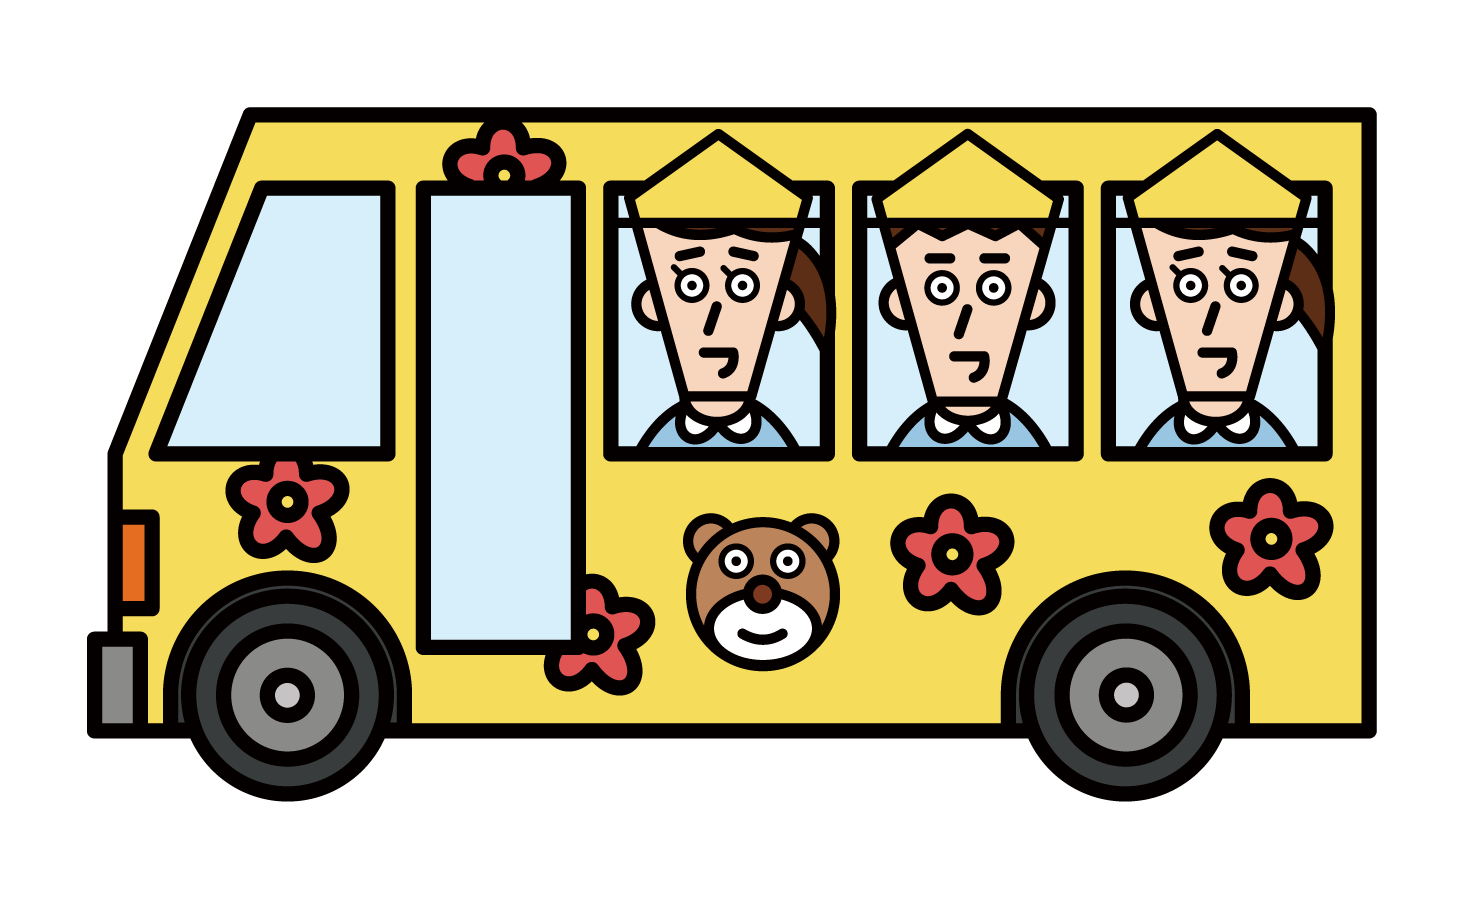 셔틀 버스에 유치원과 보육원 아이들의 그림